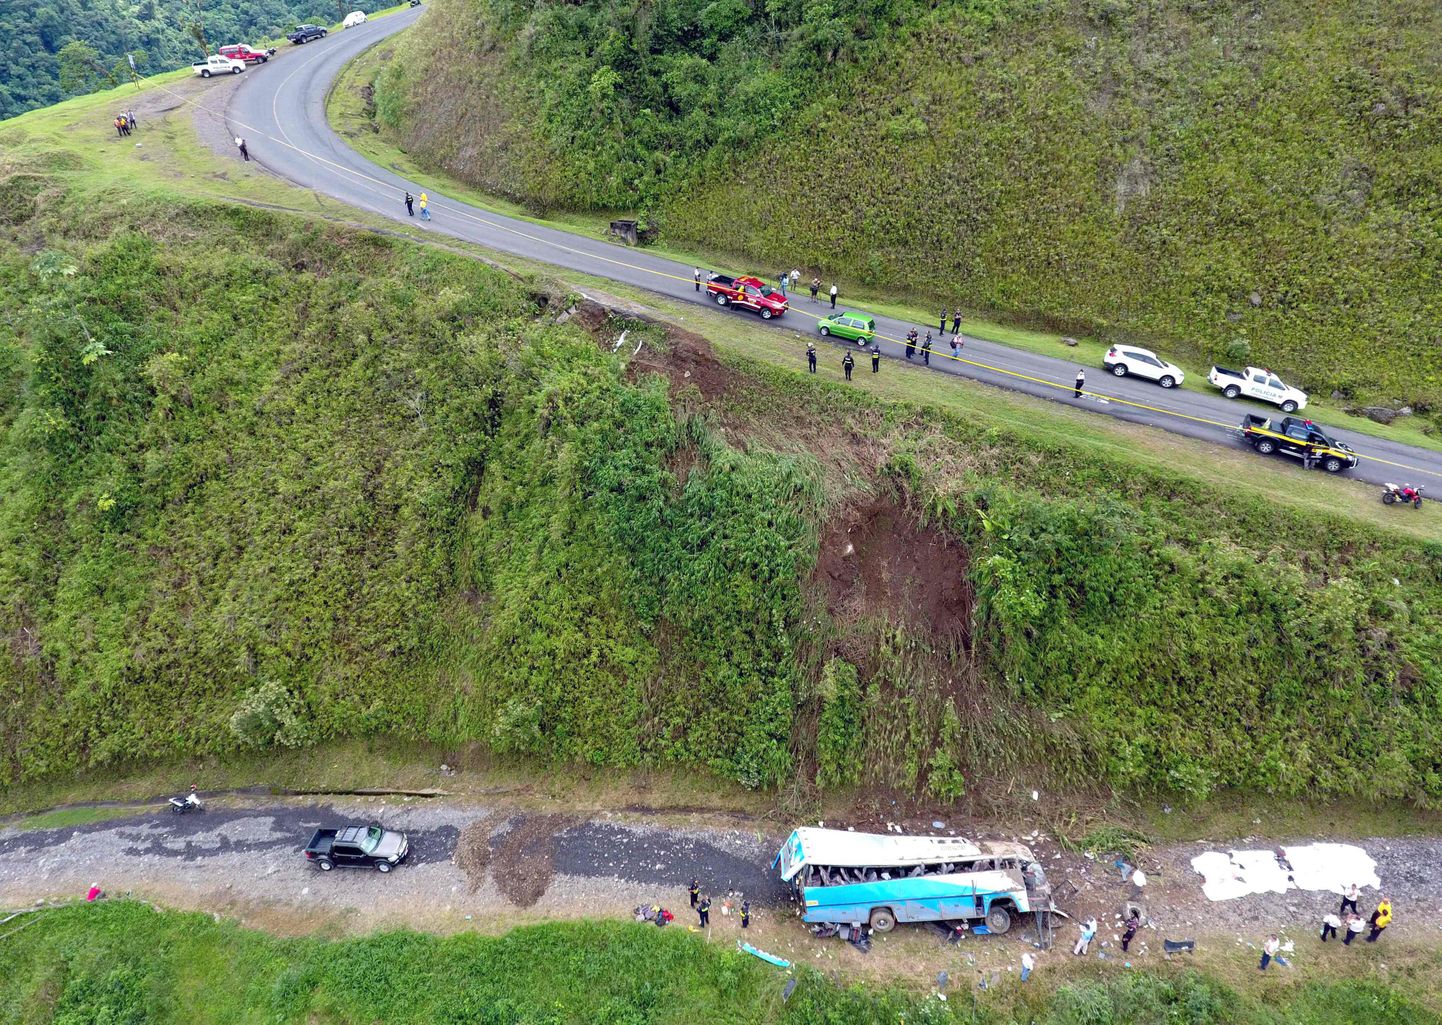 Õnnetus juhtus Cinchona asula lähedal mägiteel.